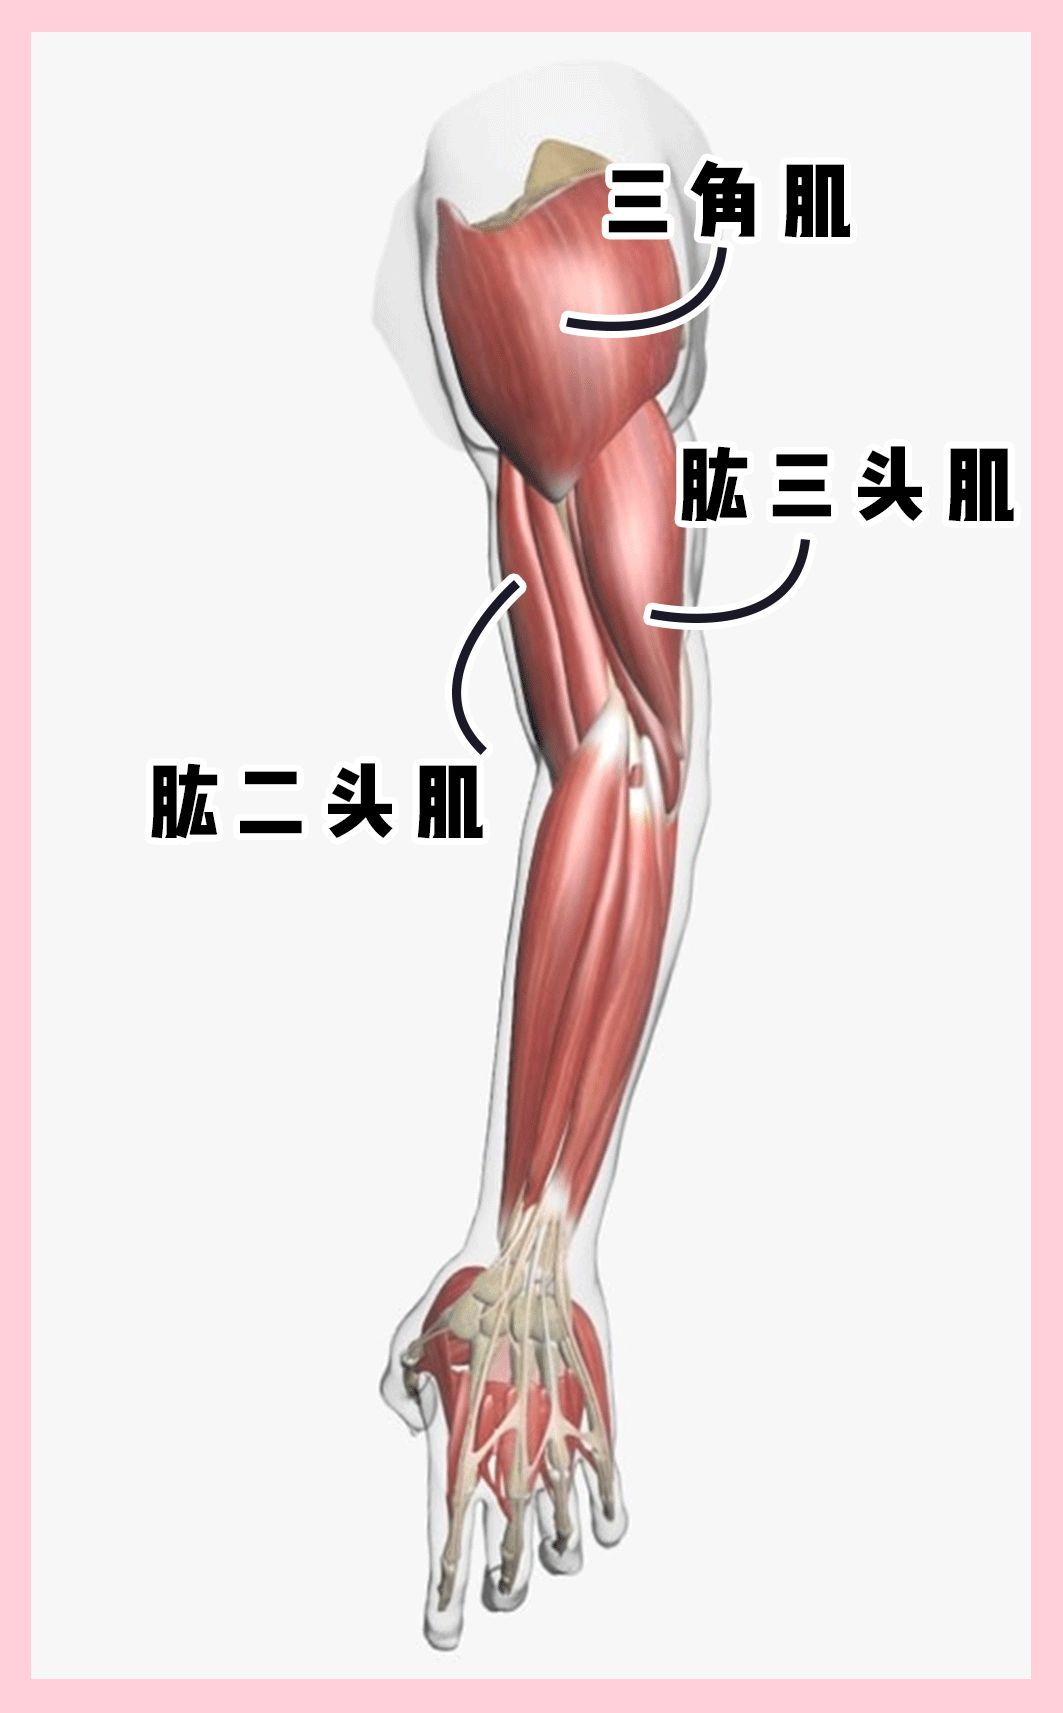 一般我们锻炼手臂主要会活动到的肌肉有3个:肩头的三角肌,手臂前侧的